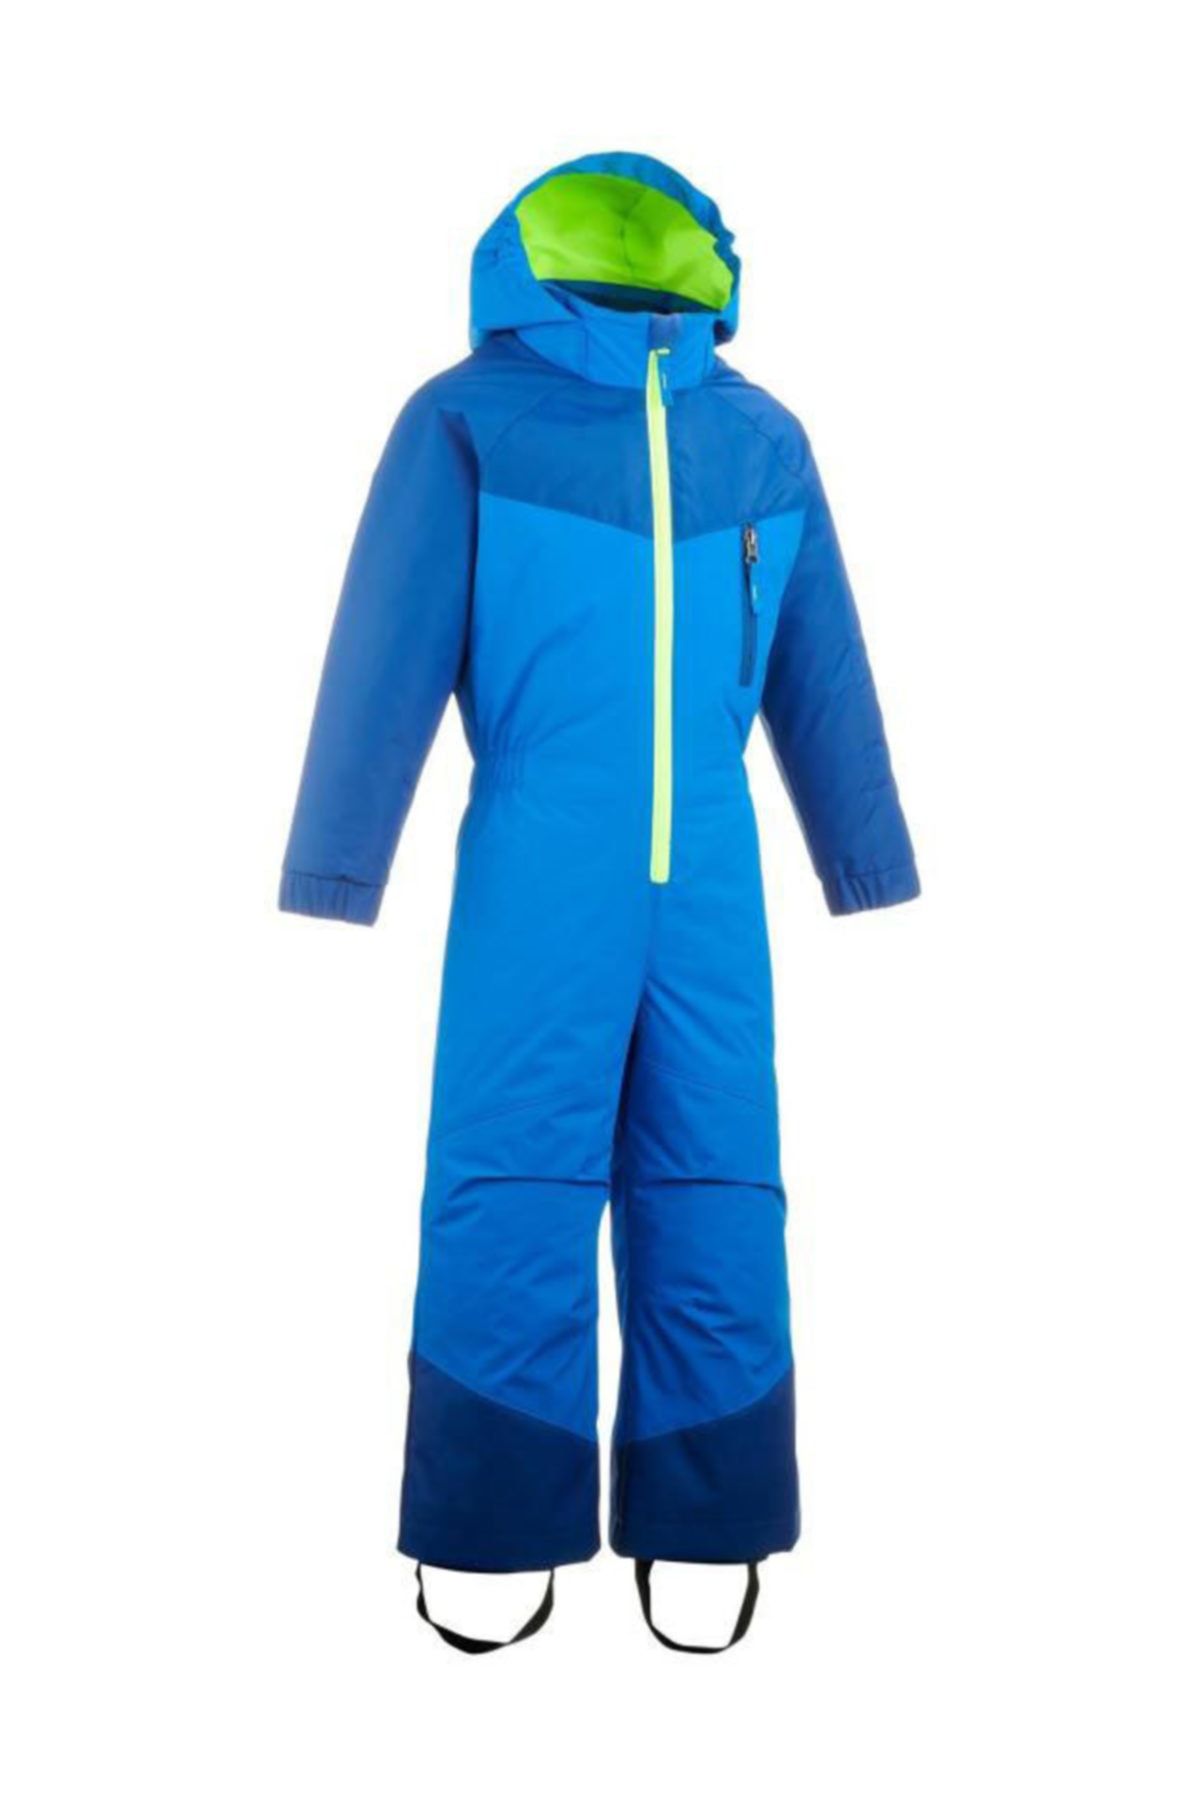 Decathlon - Çocuk Kayak Tulumu Kıyafeti Su Geçirmez Sıcak Tutar Nefes Alır